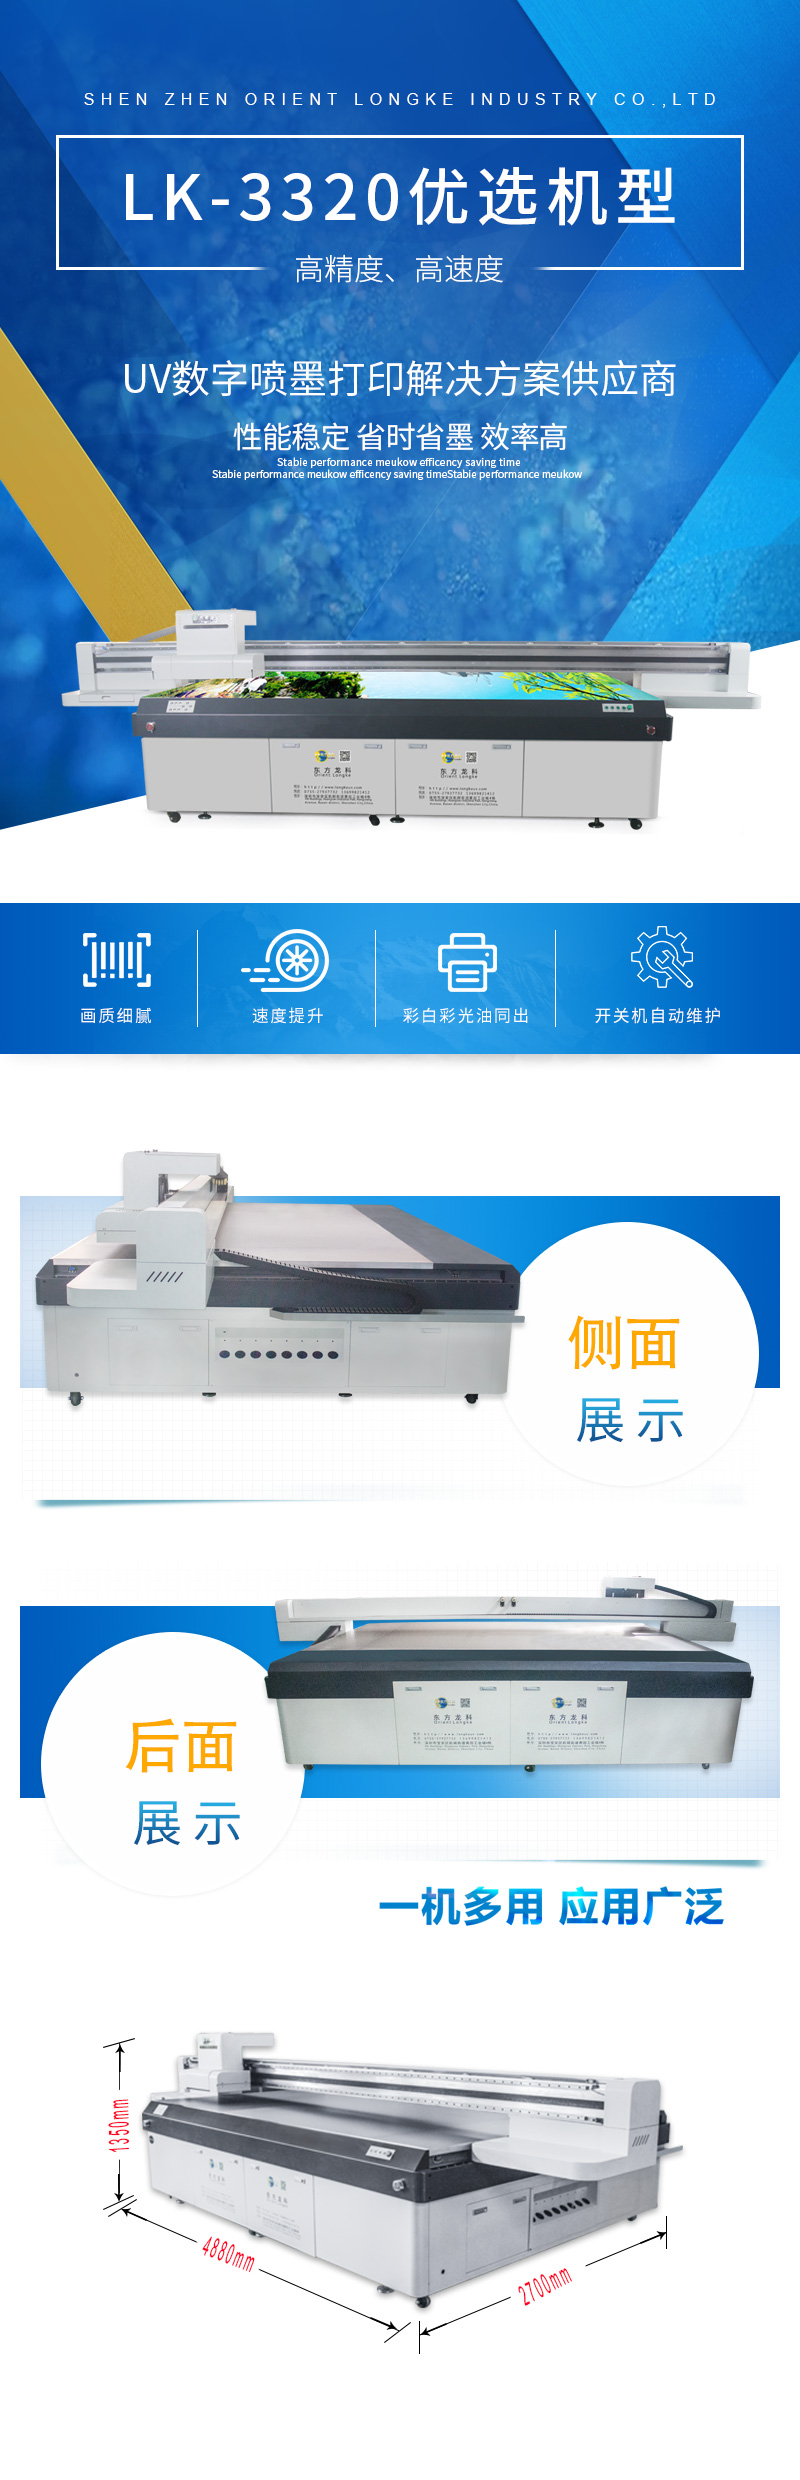 UV打印机LK3320